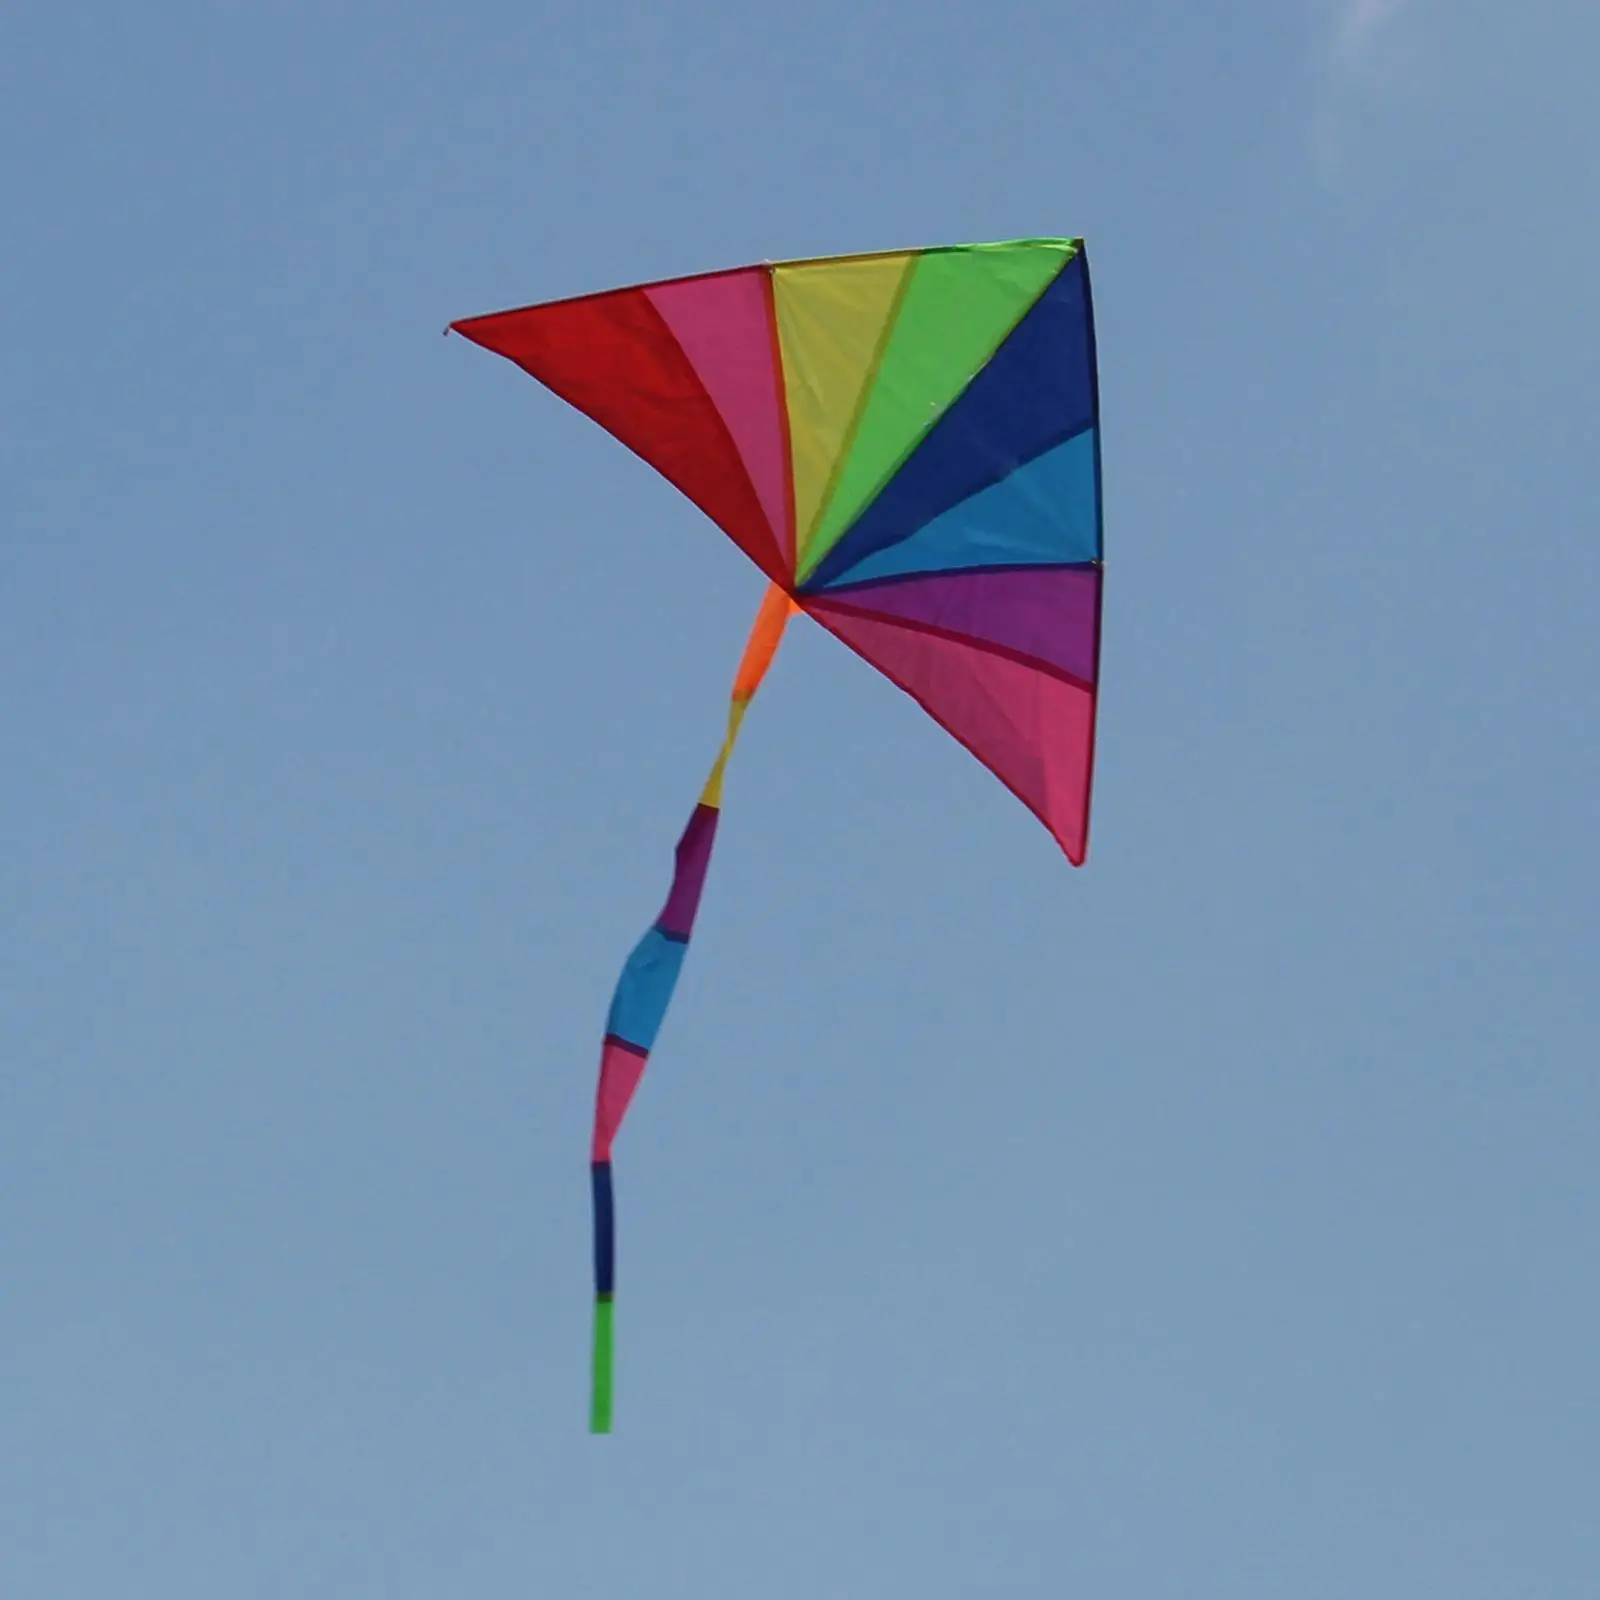 Rainbow Delta Kite Single Line Triangle Kite for Garden Activities